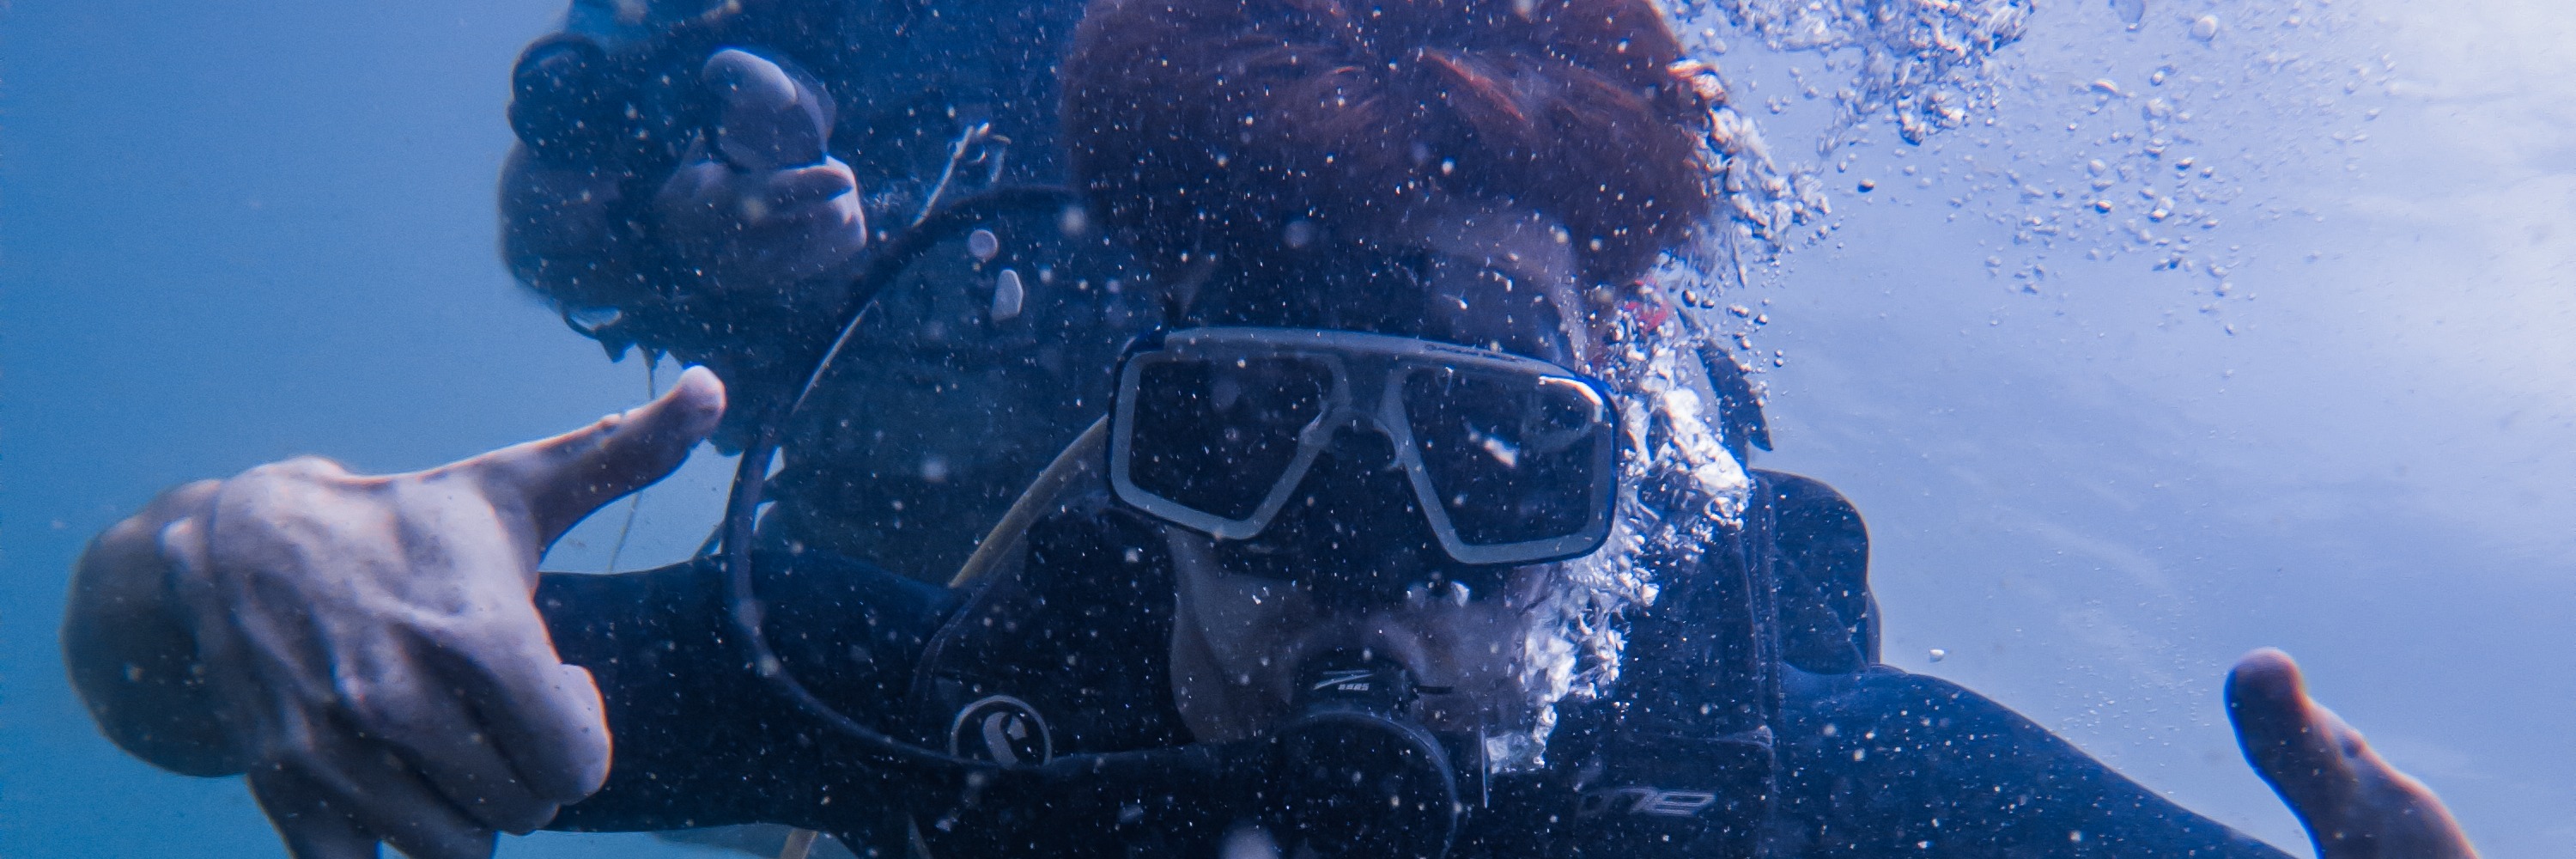 閣骨島 PADI 五星潛水中心嘗試潛水體驗